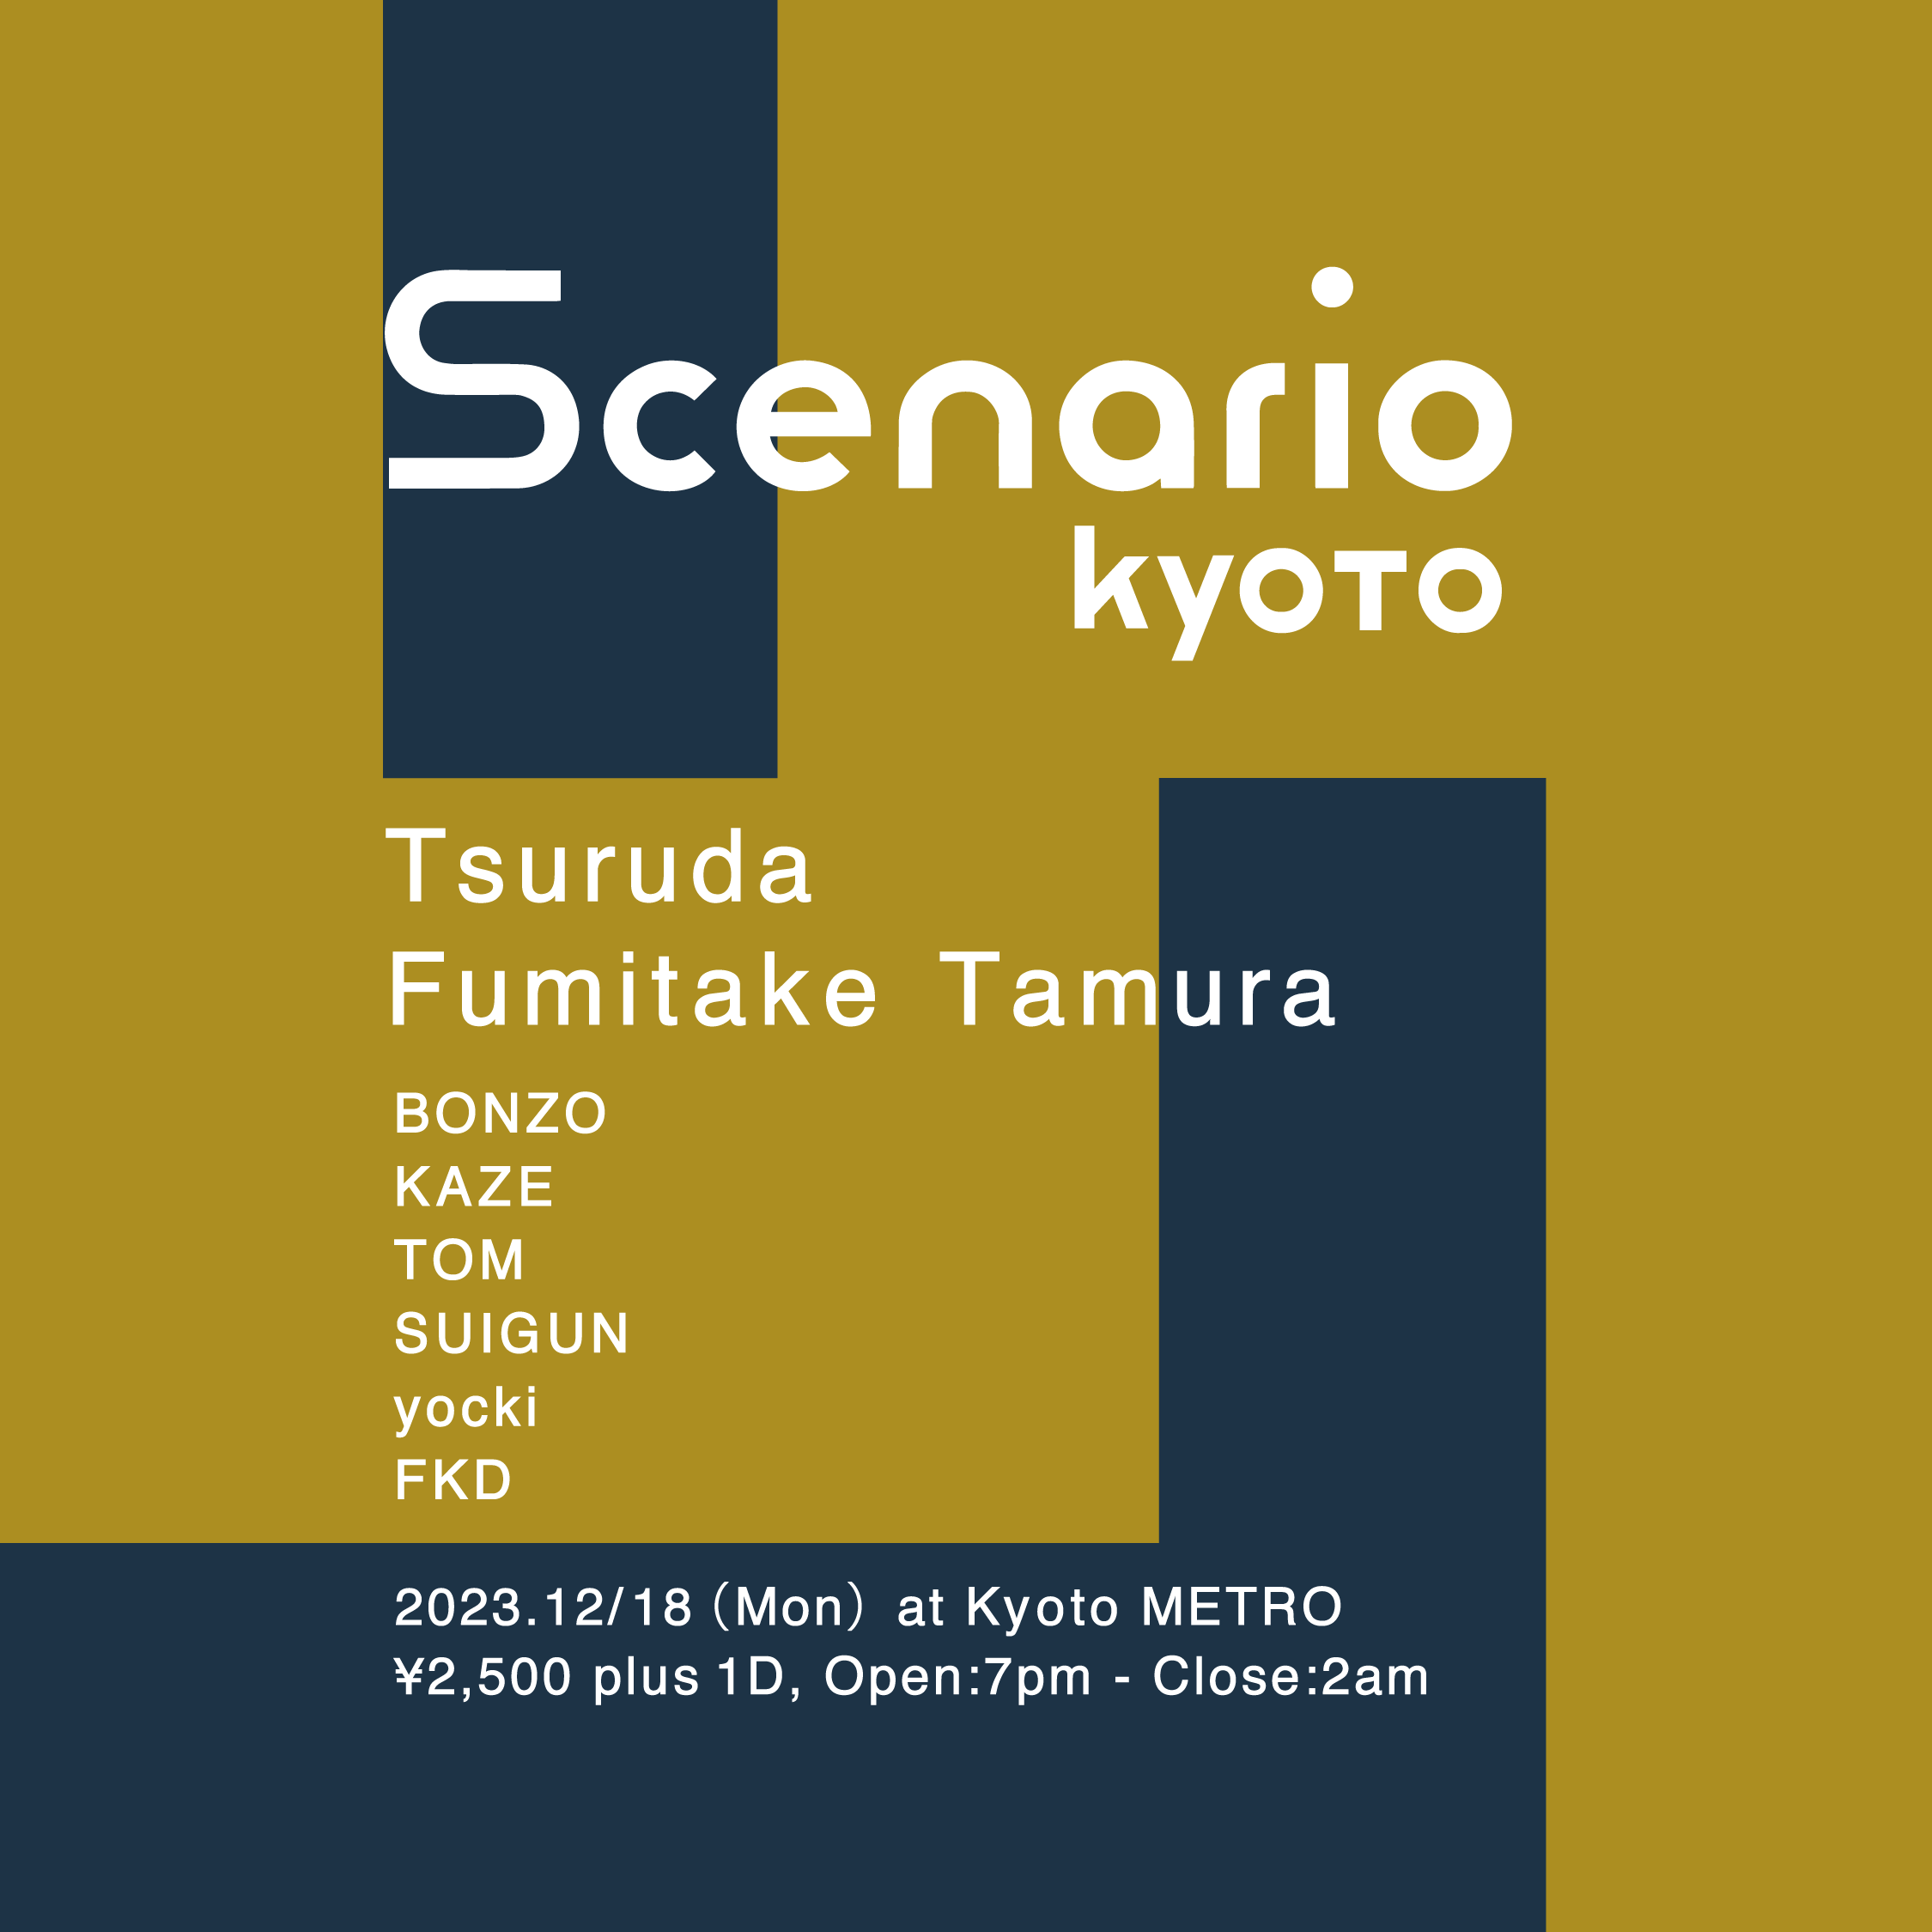 Scenario Kyoto - Página frontal